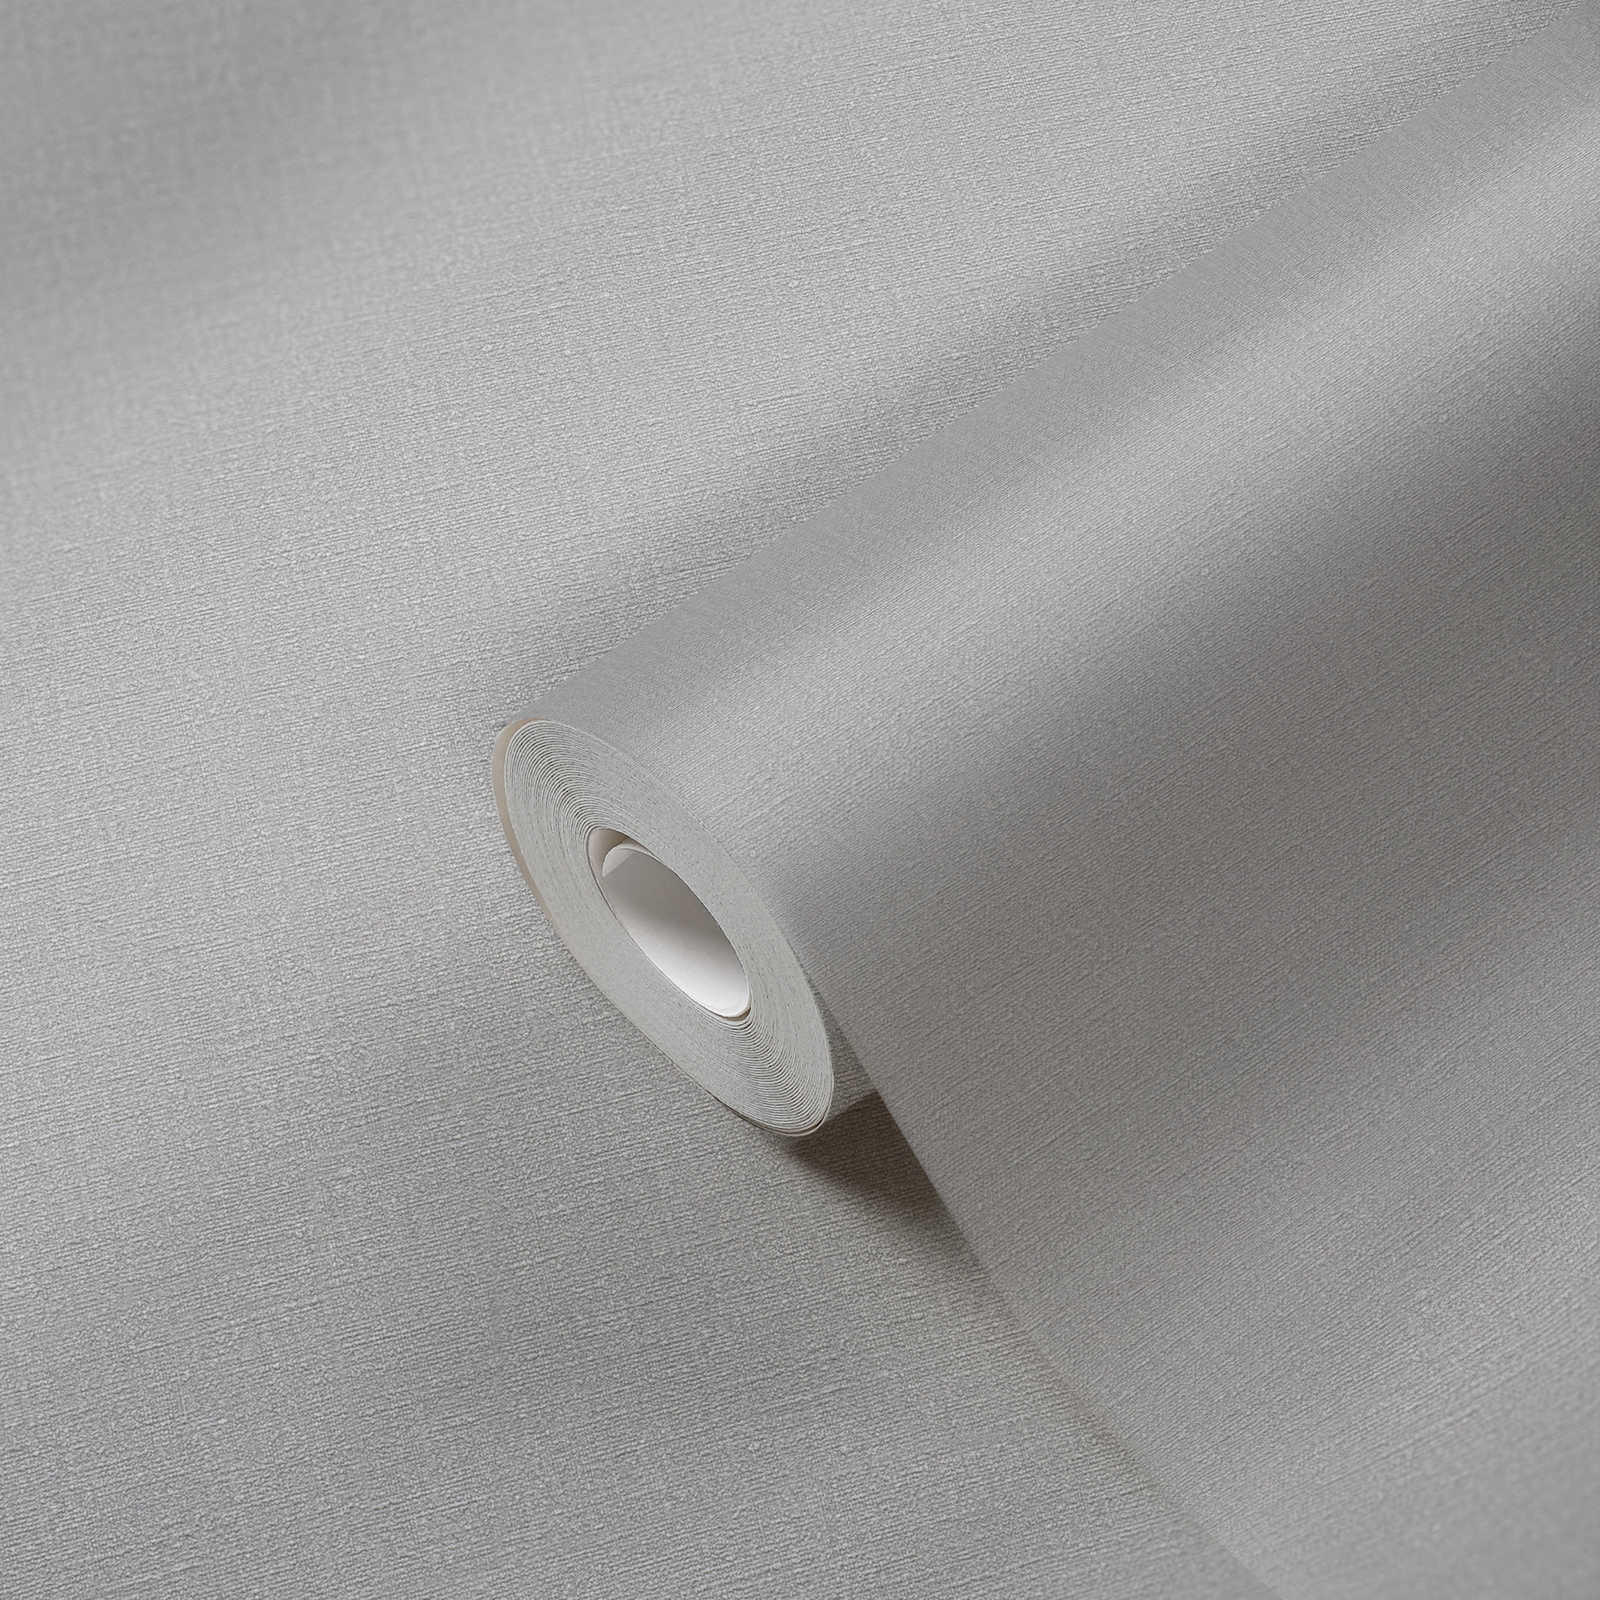             Papier peint gris uni & mat avec motifs structurés
        